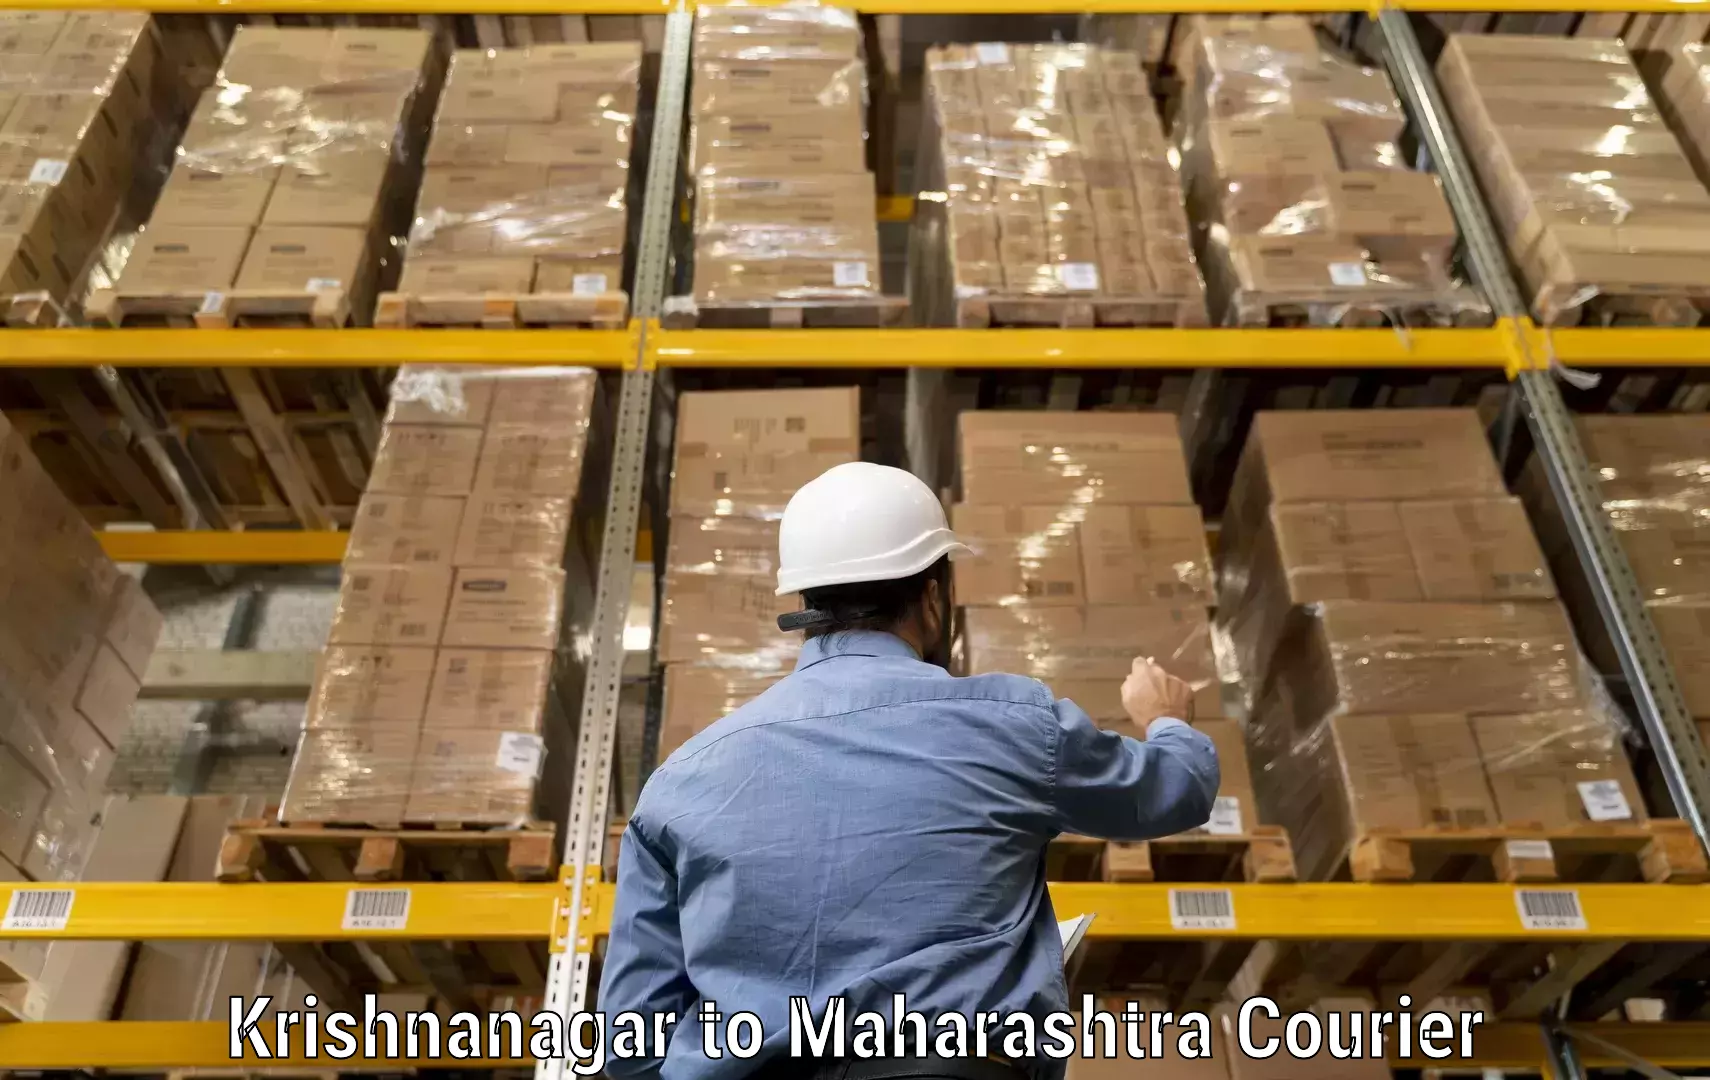 Global freight services Krishnanagar to Asangi Jat